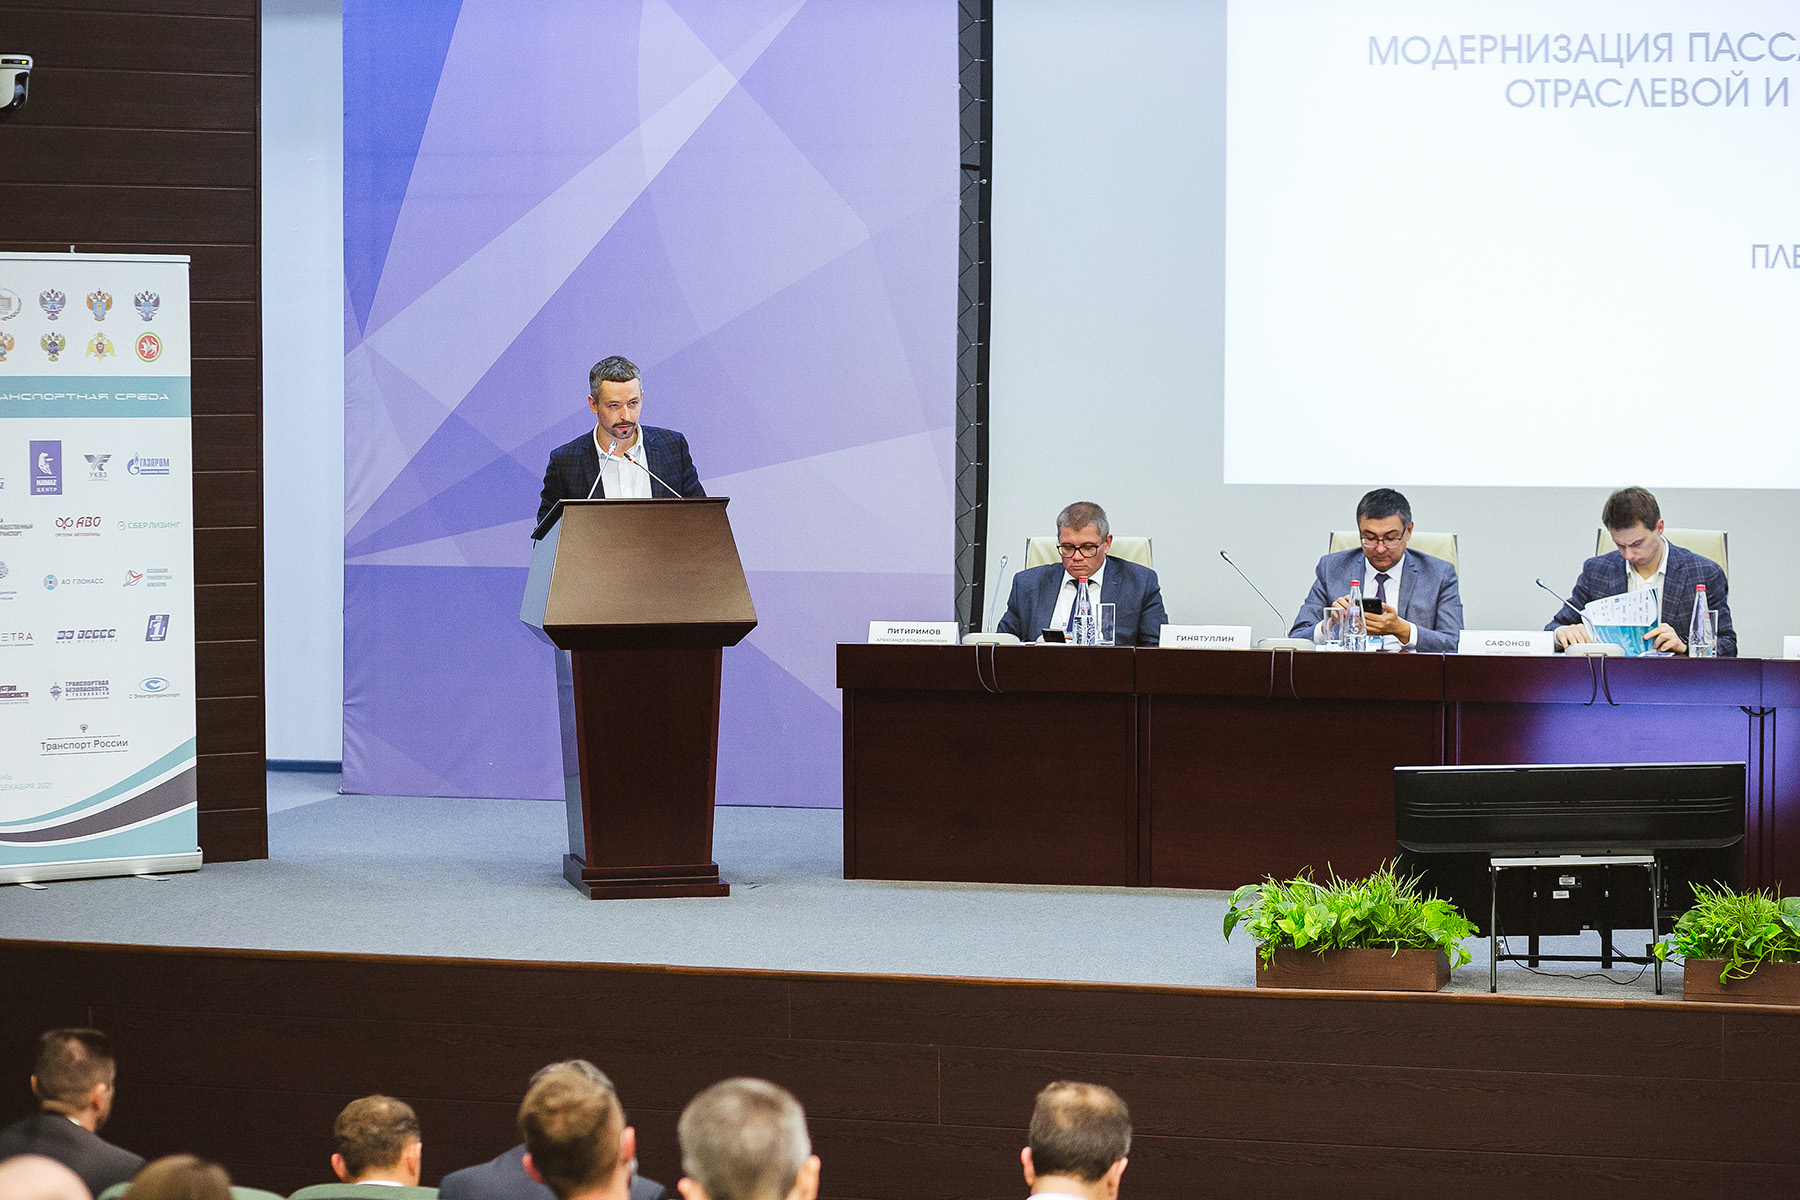 III Форум «Транспортная среда» пройдет 5-7 апреля в Казани